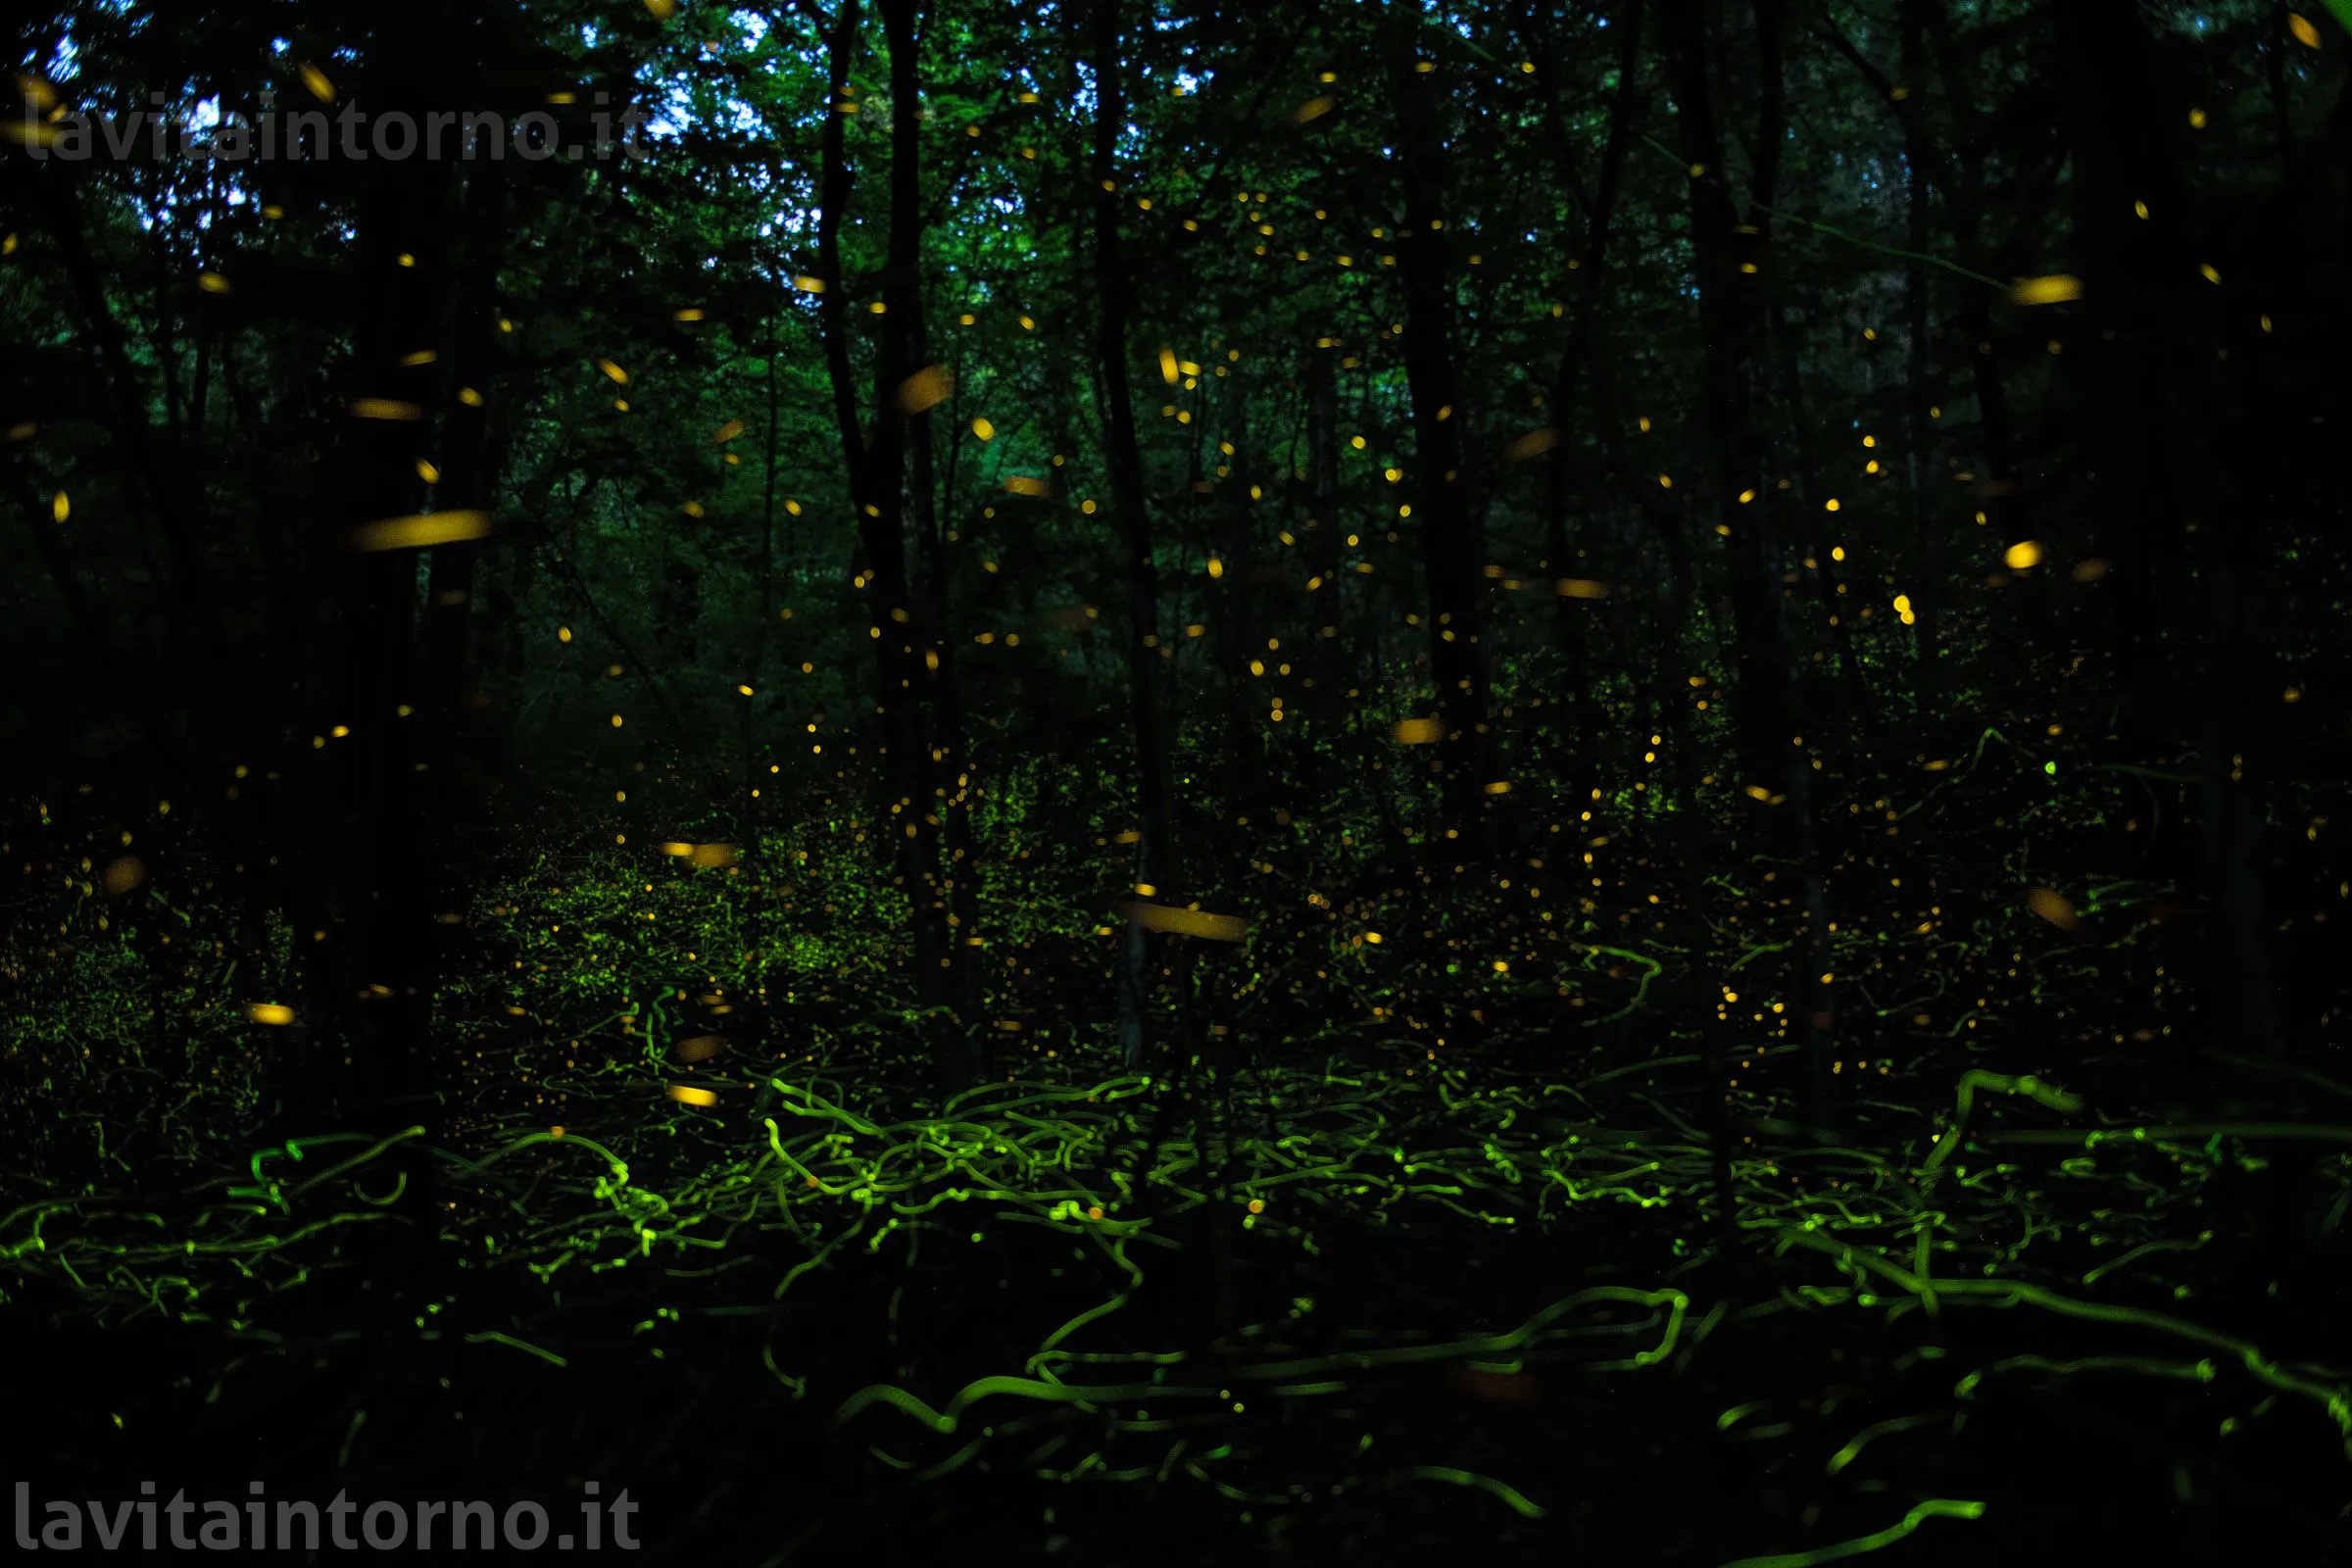 accendi la notte / light up the night
Nikon D850
Nikkor 24-70 F/2.8G AF-S